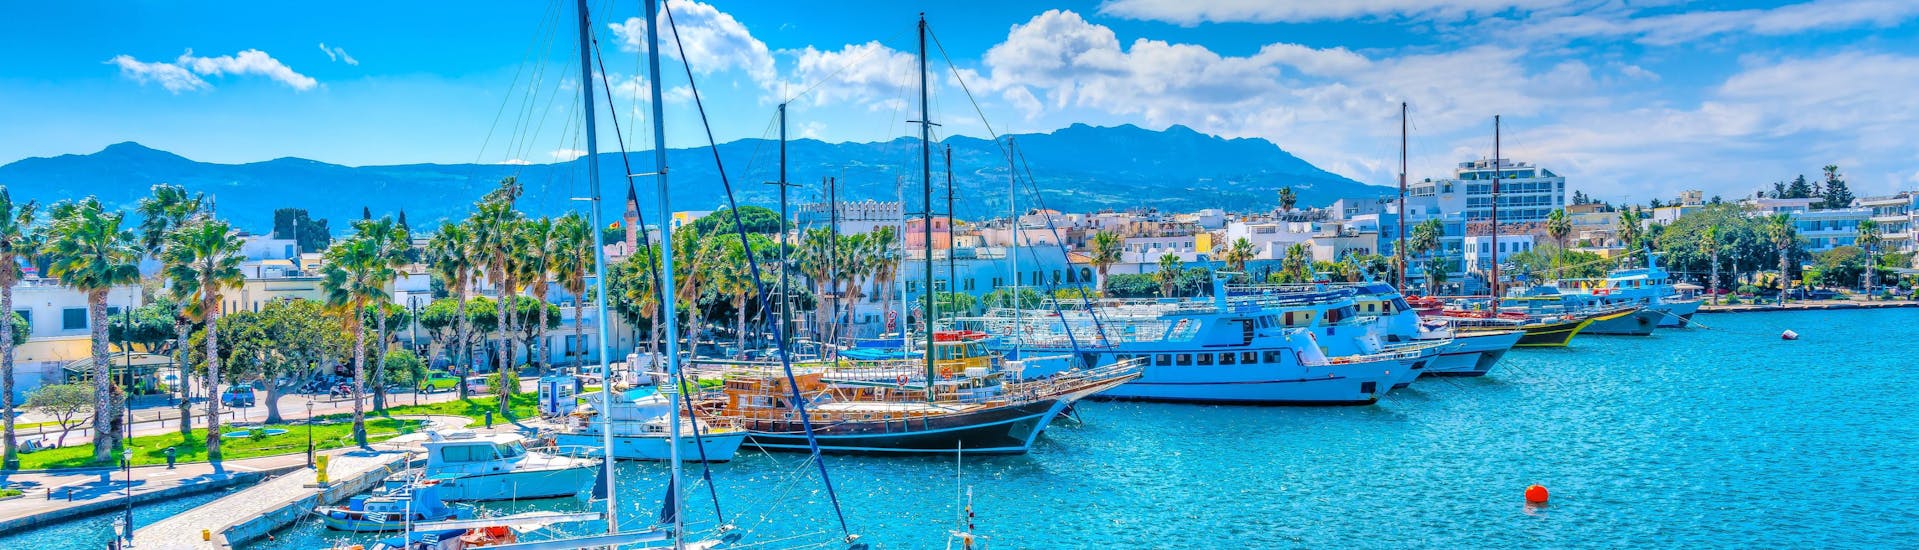 Immagine del porto di Kos, in Grecia, una destinazione popolare per le gite in barca.